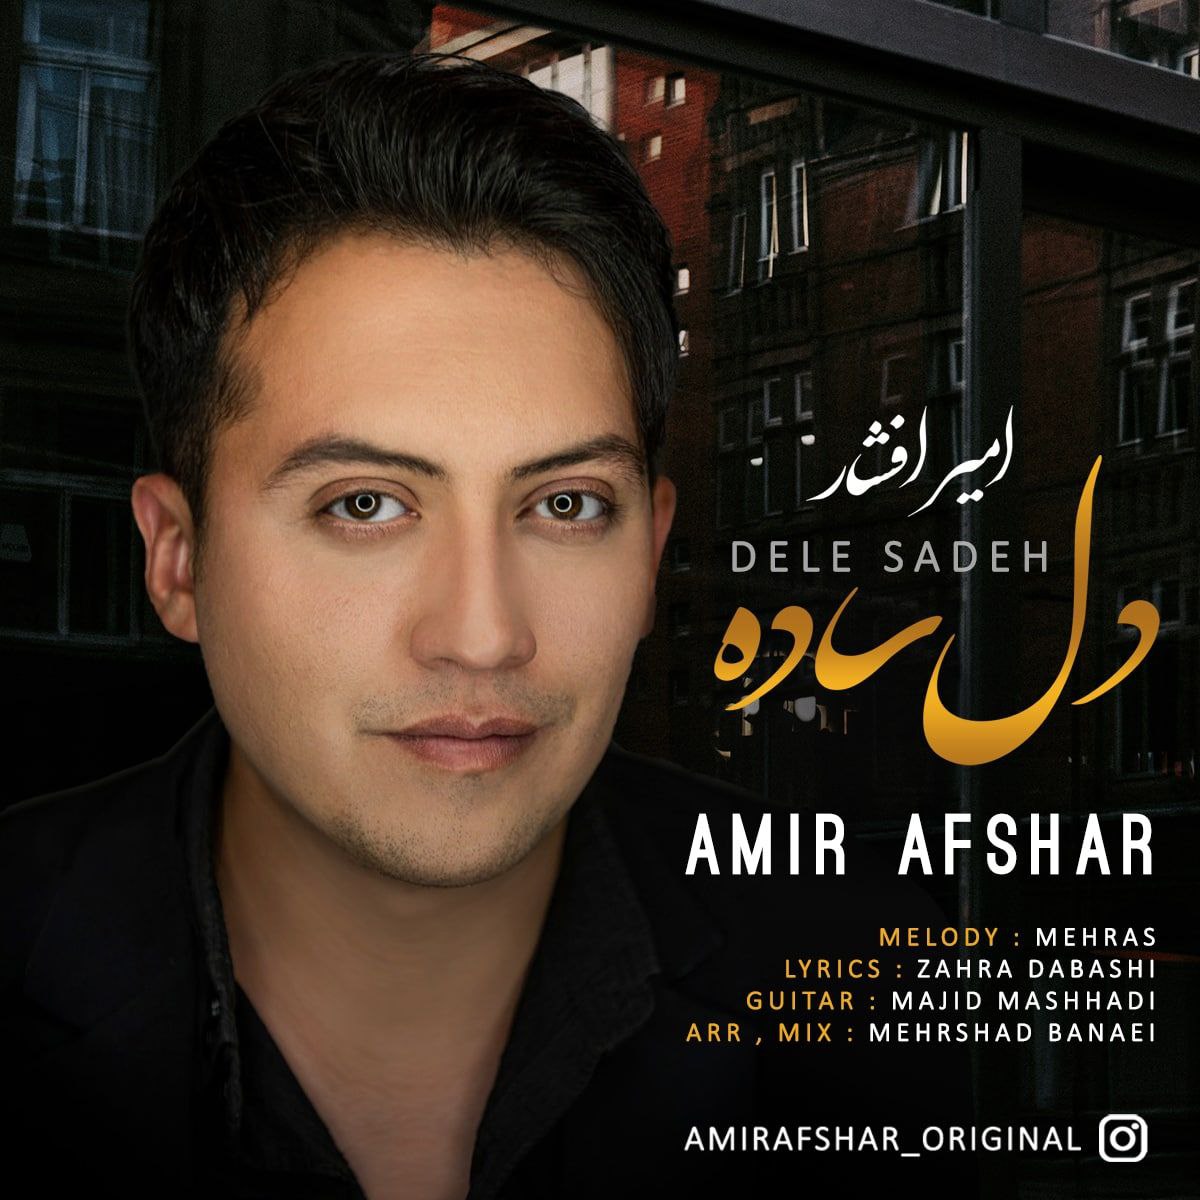 Amir Afshar – Dele Sadeh